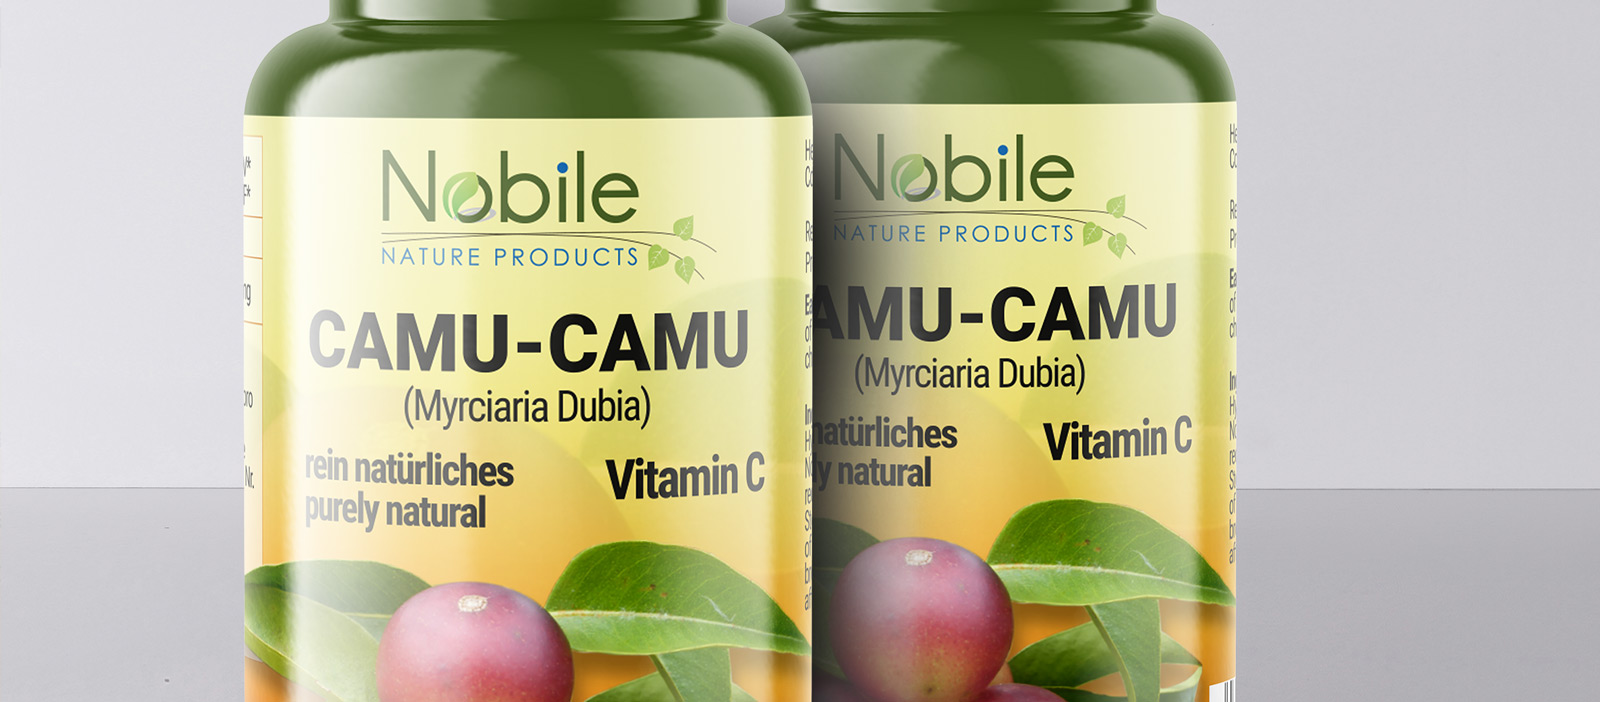 Diseño gráfico y creativo de etiquetas y packaging para CAMU-CAMU de Nobile Nature Products en Alemania